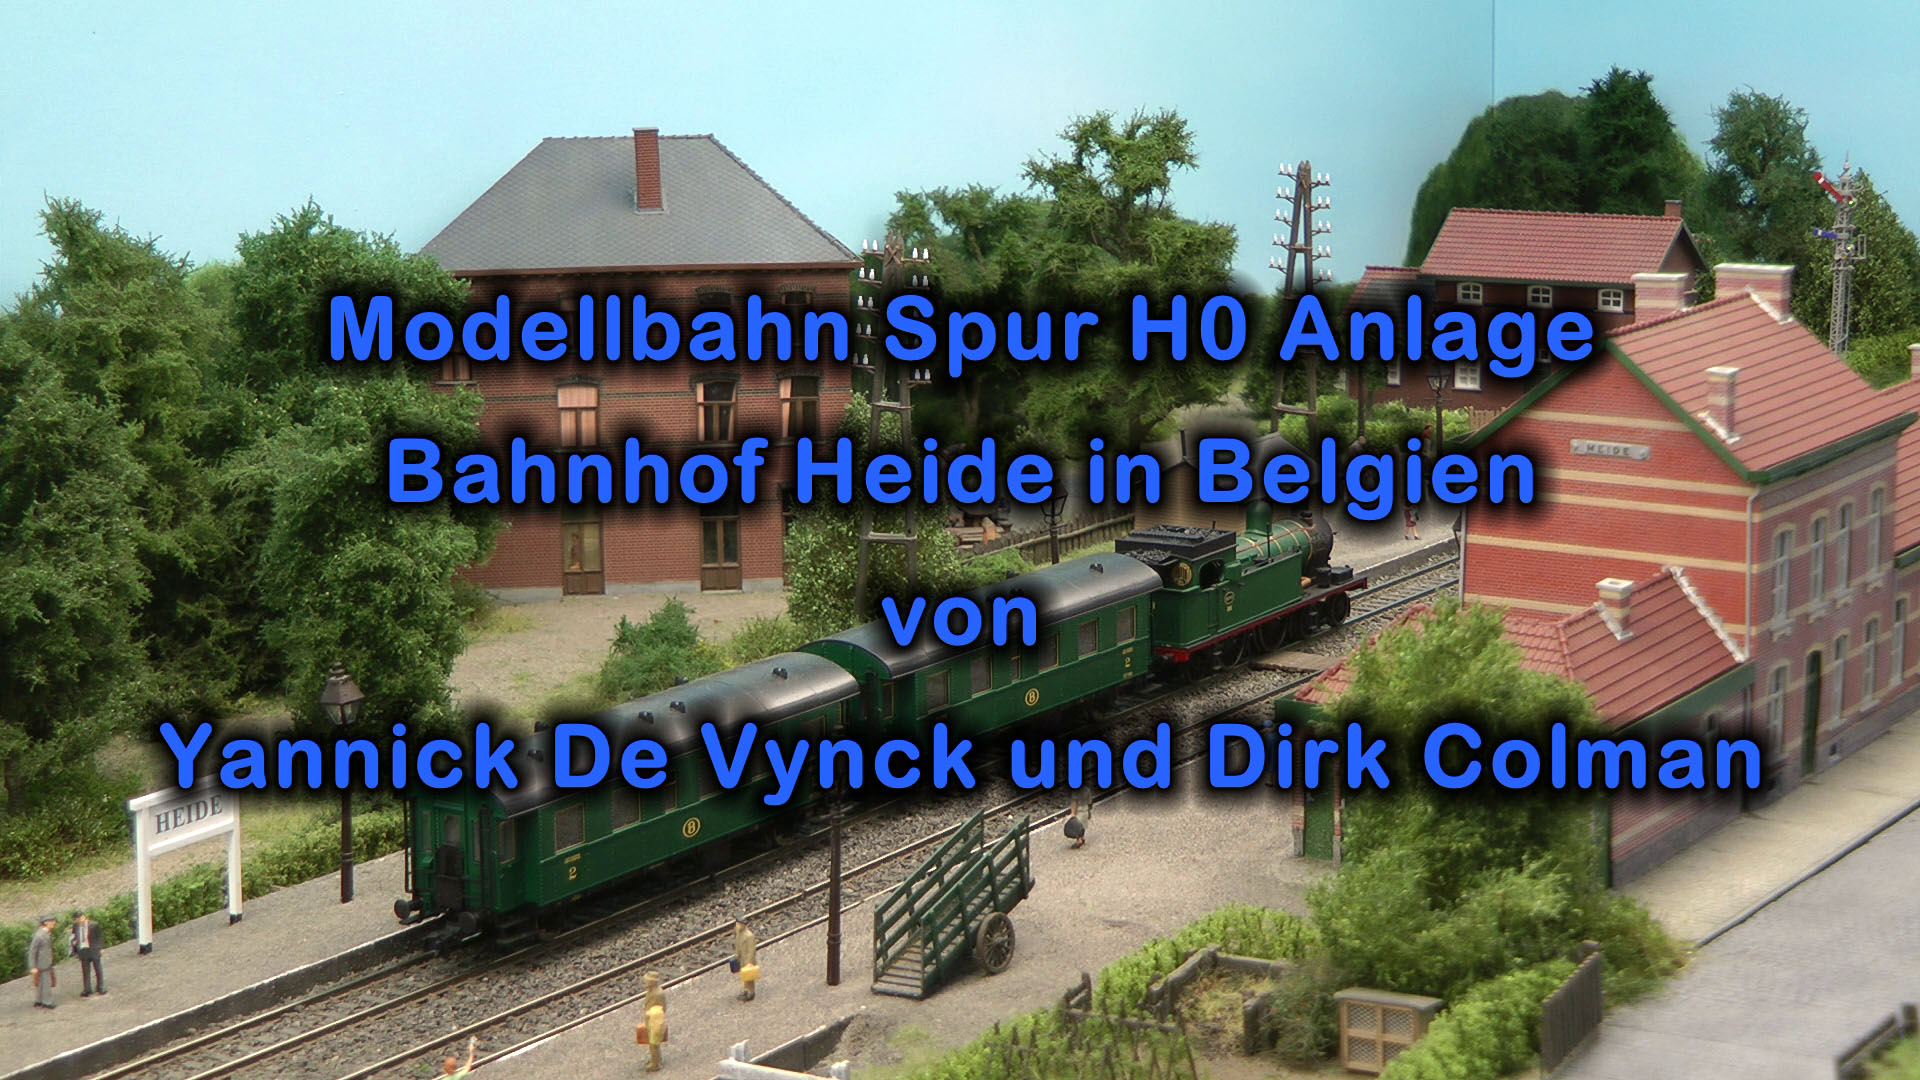 Modellbahn Spur H0 Anlage Bahnhof Heide in Belgien von Yannick De Vynck und Dirk Colman